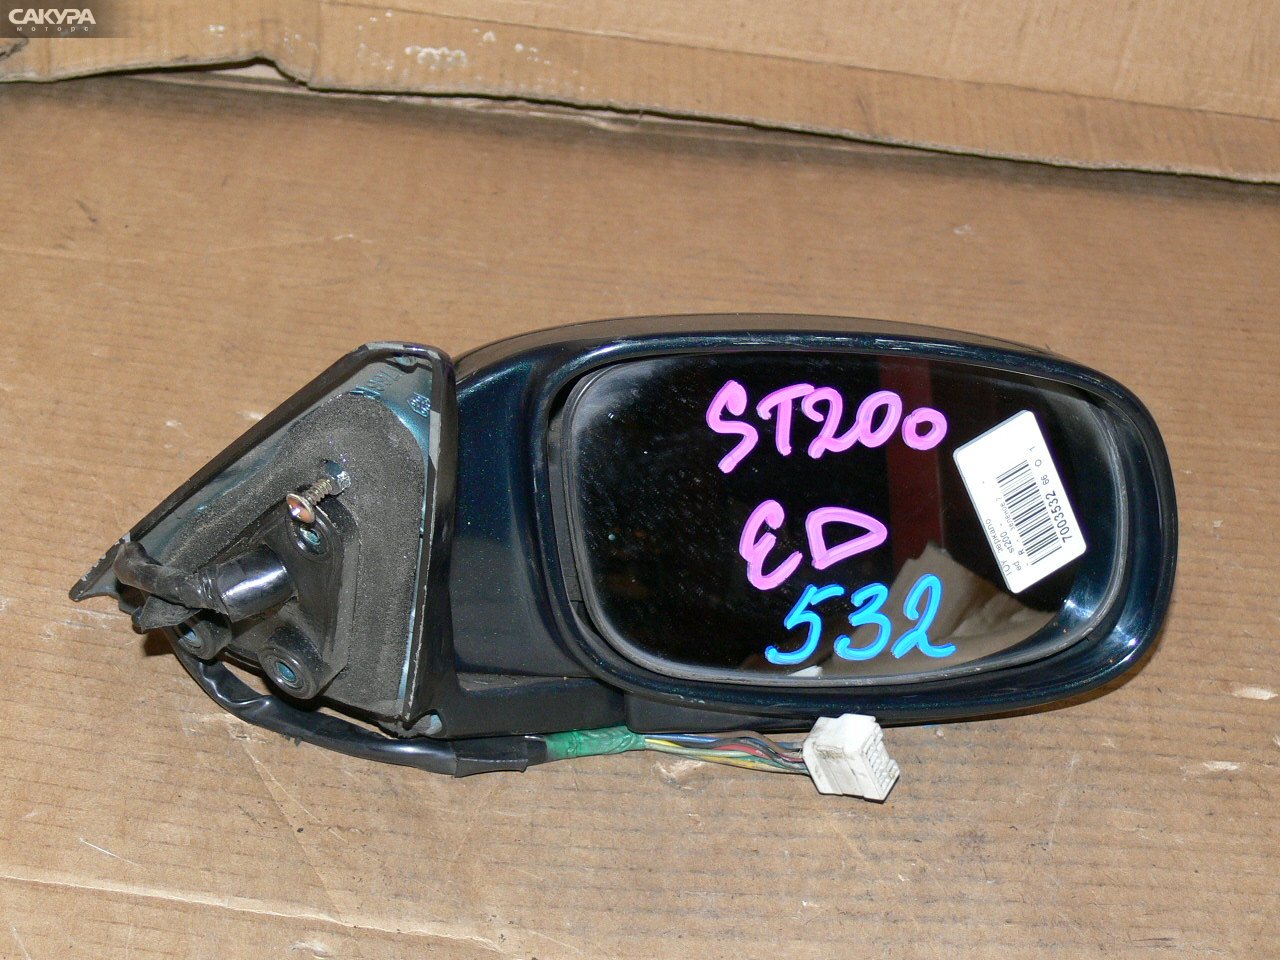 Зеркало боковое правое Toyota Carina ED ST200: купить в Сакура Иркутск.